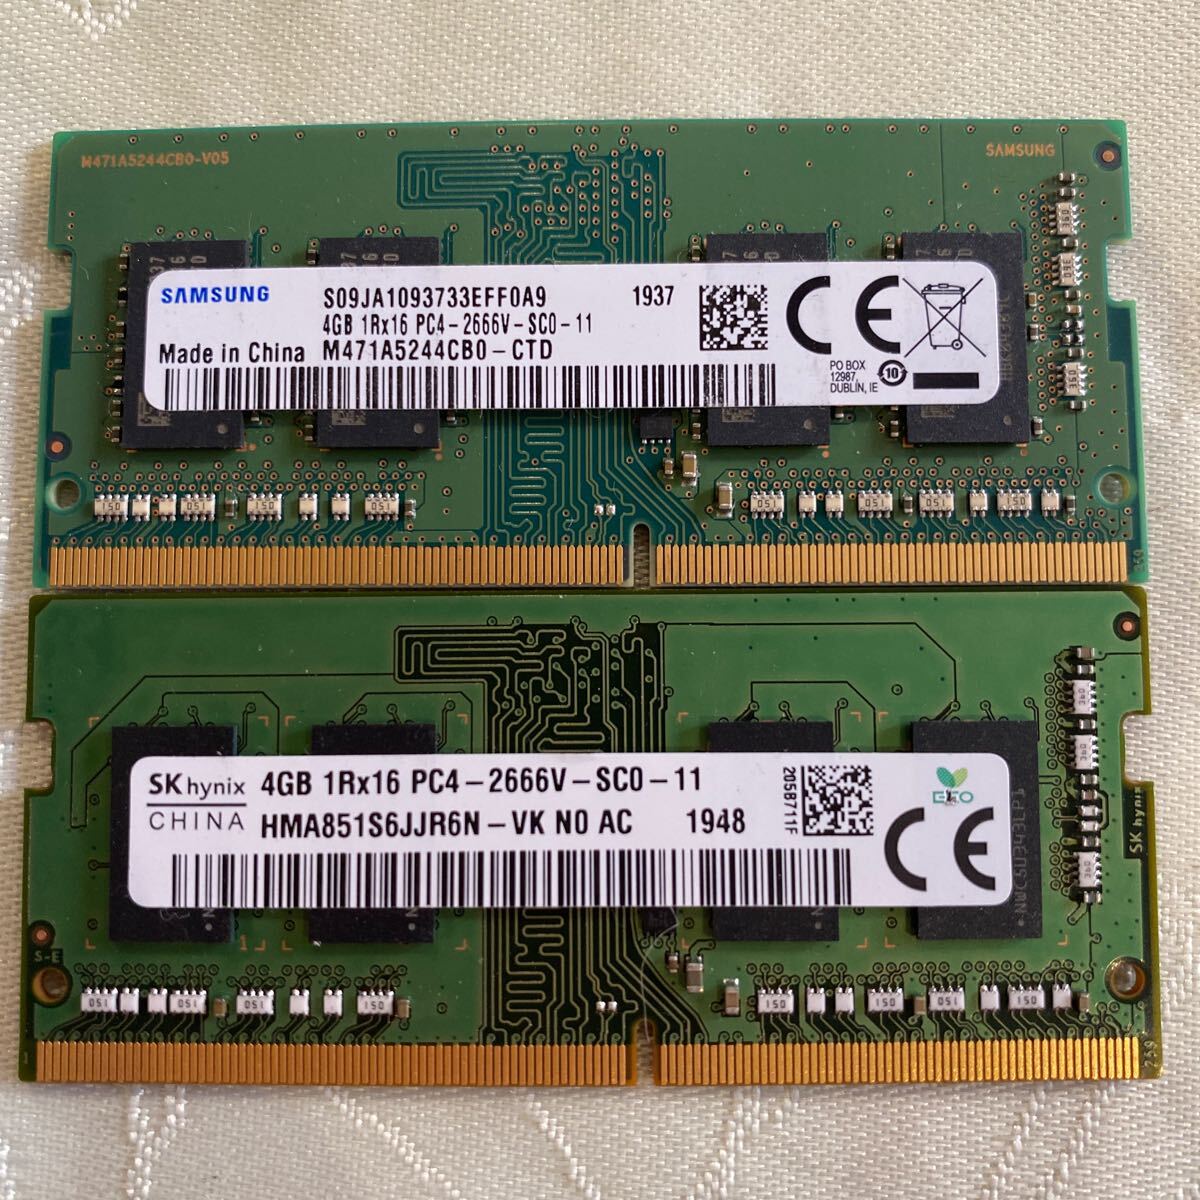 SKhynix,SAMSUNG 1RX16 PC4 21300 DDR4 2666V 4GBX2 pieces set (8GB)